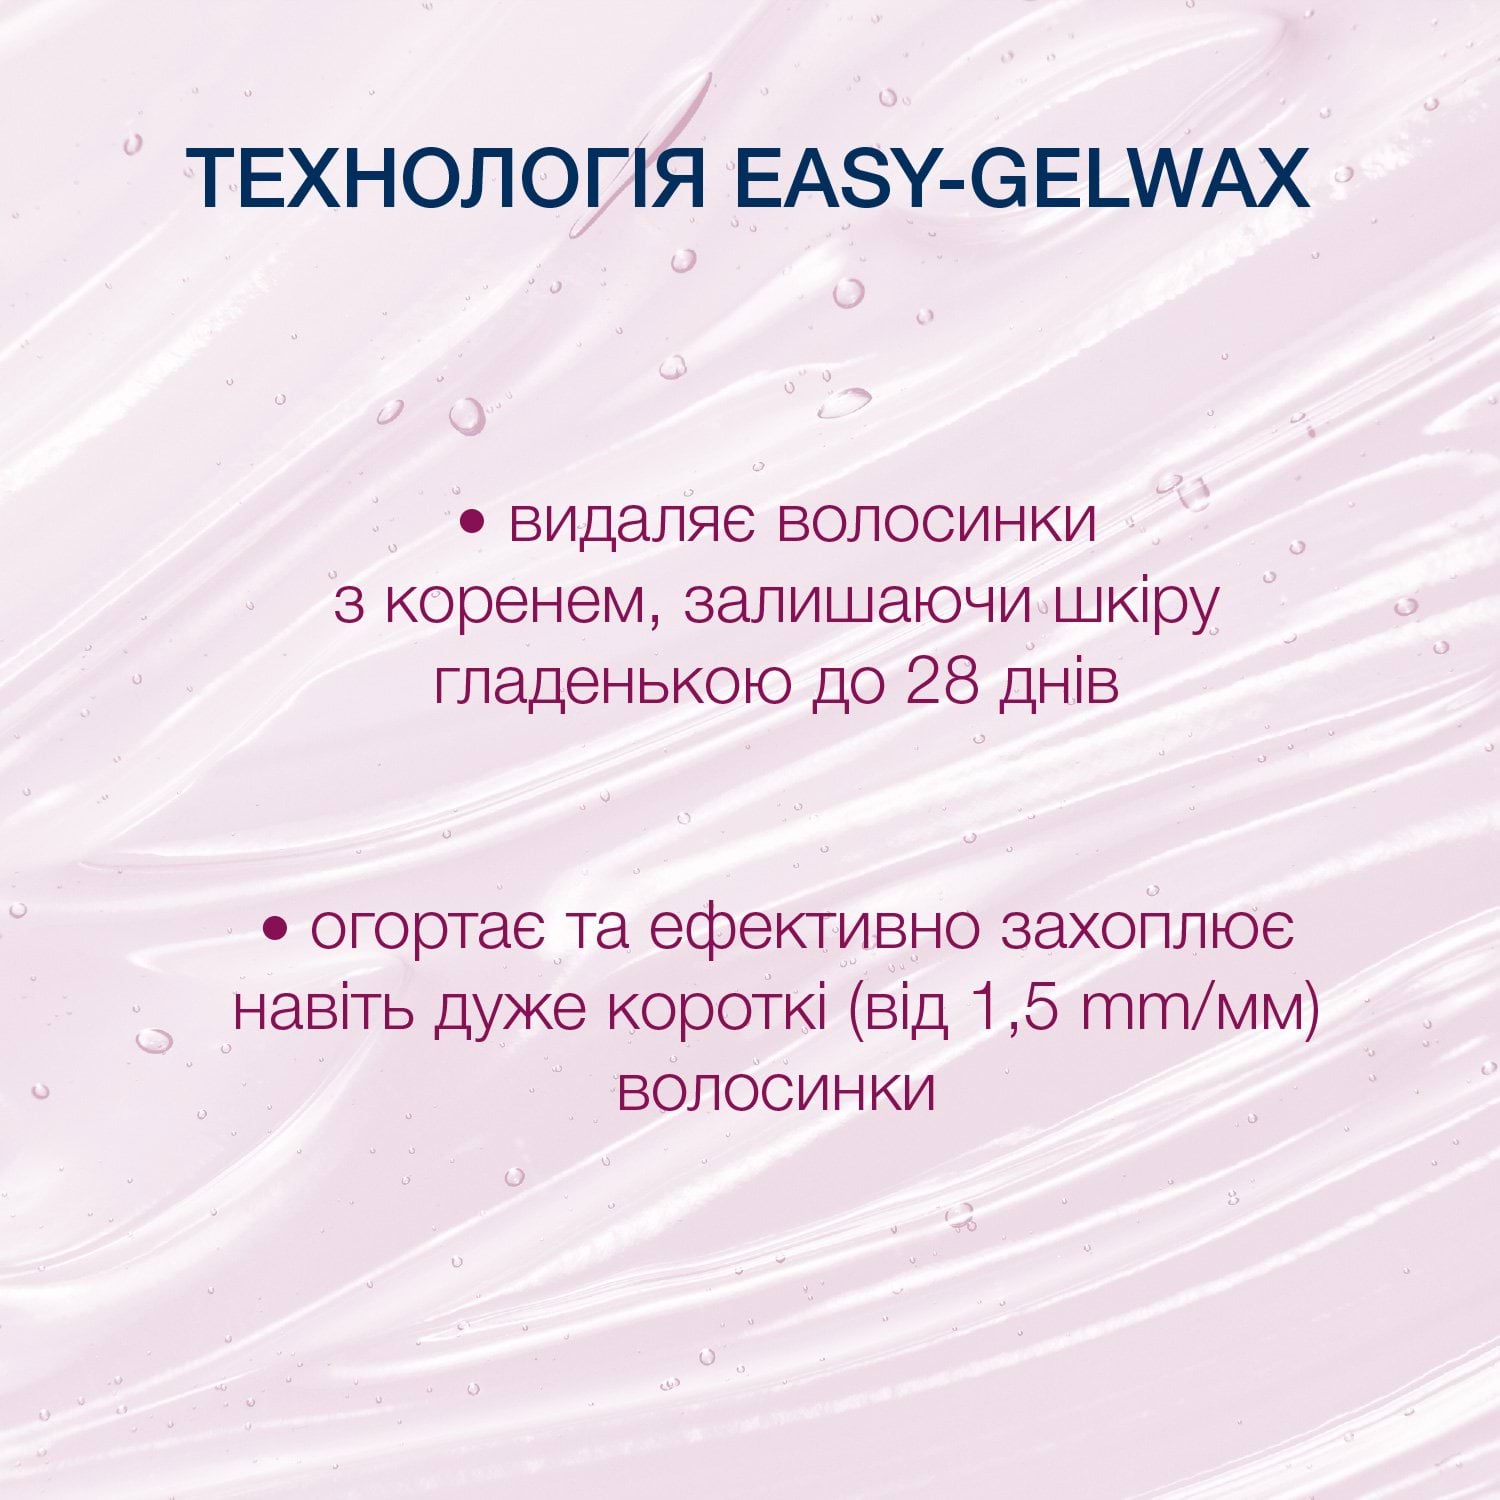 Воскові смужки Veet Easy-Gelwax для чутливої шкіри (лінія бікіні та область під пахвами) оксамитова троянда та ефірні олії 14 шт